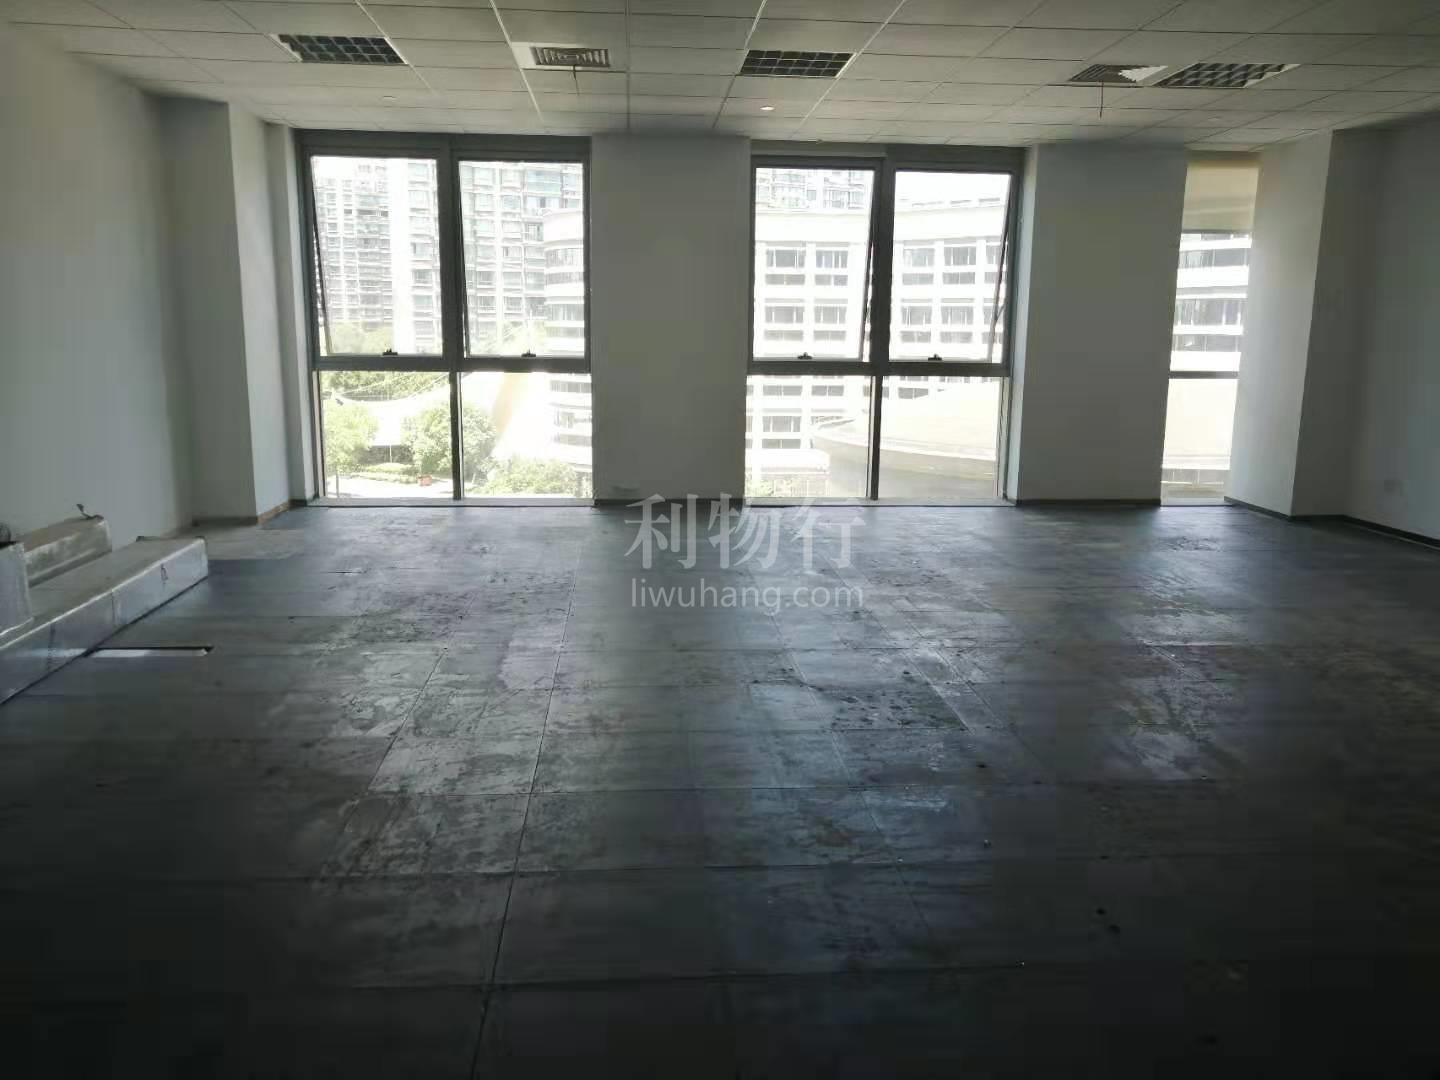 上海数字产业园写字楼130m2办公室4.00元/m2/天 简单装修